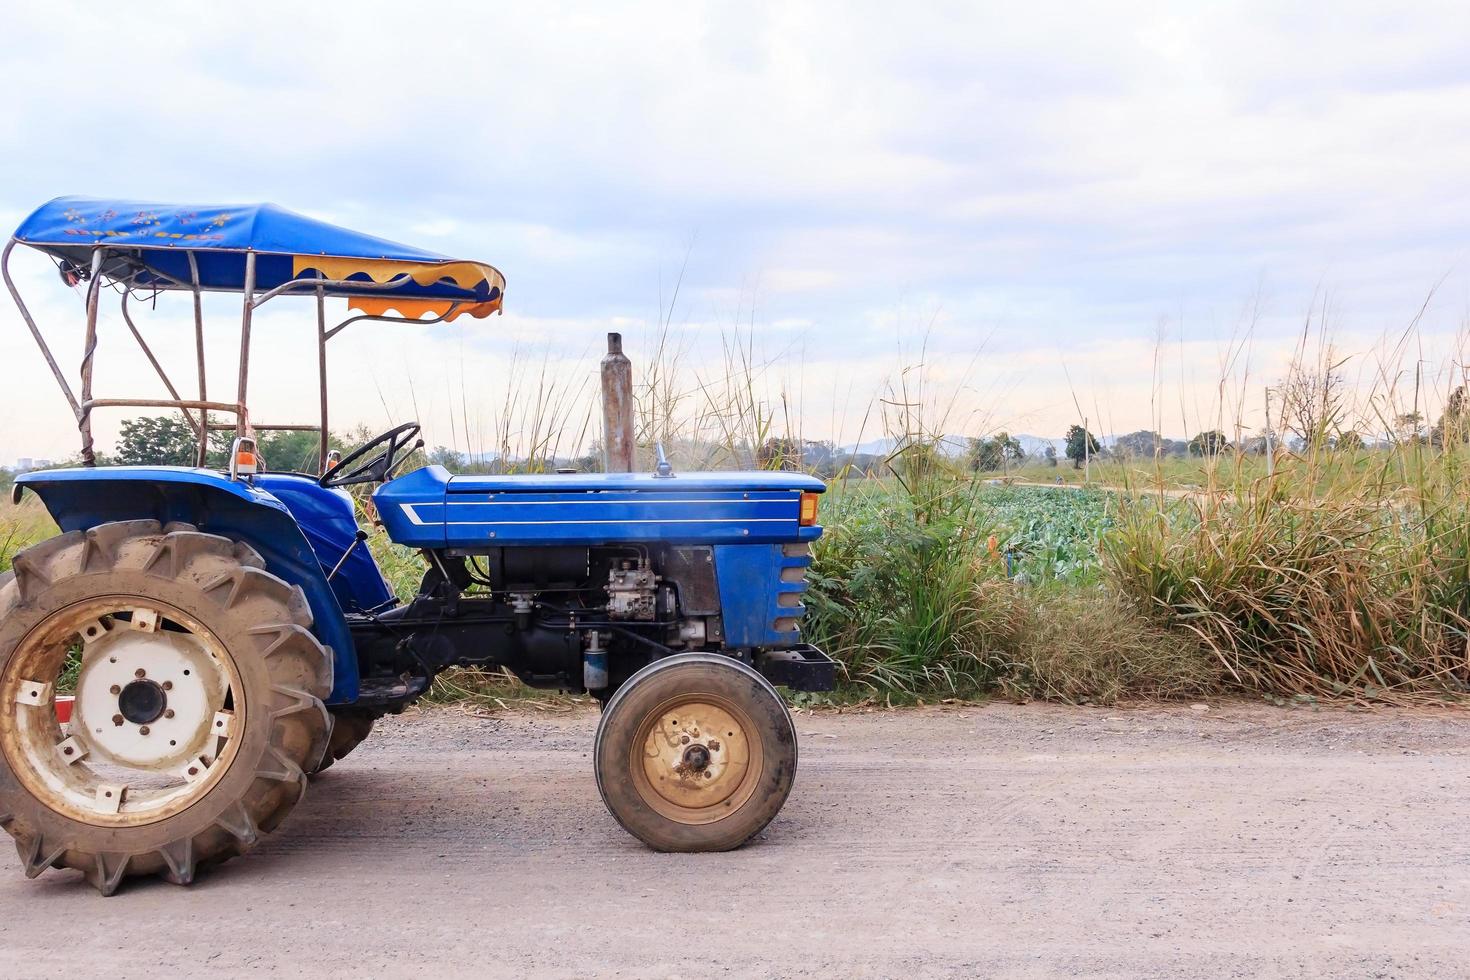 Véhicule e-taen ou tracteur agricole en campagne avec paysage de ferme de légumes biologiques verts, véhicules agricoles photo